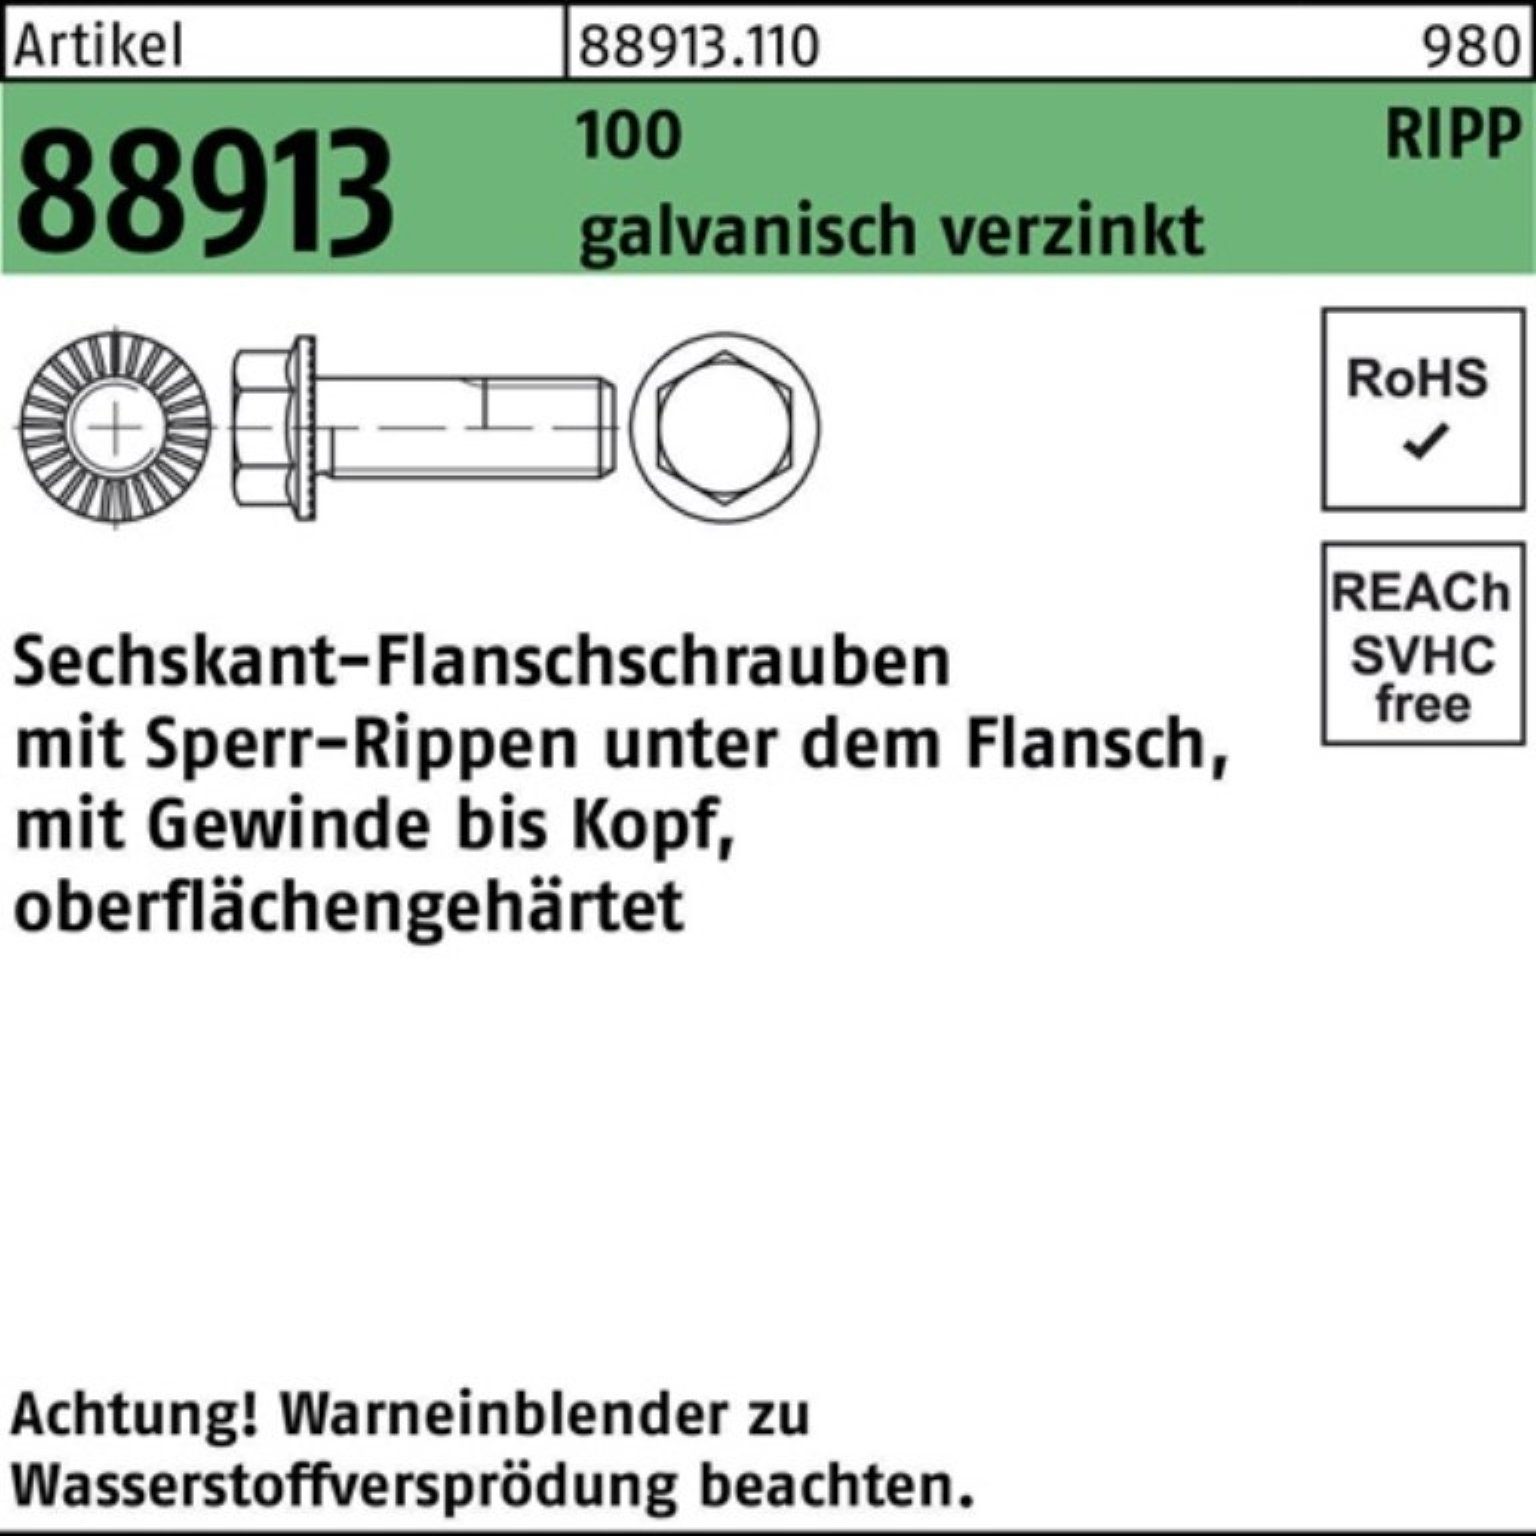 100 Sperr-Ripp M6x14 Schraube VG 88913 500er Sechskantflanschschraube Reyher ga R Pack